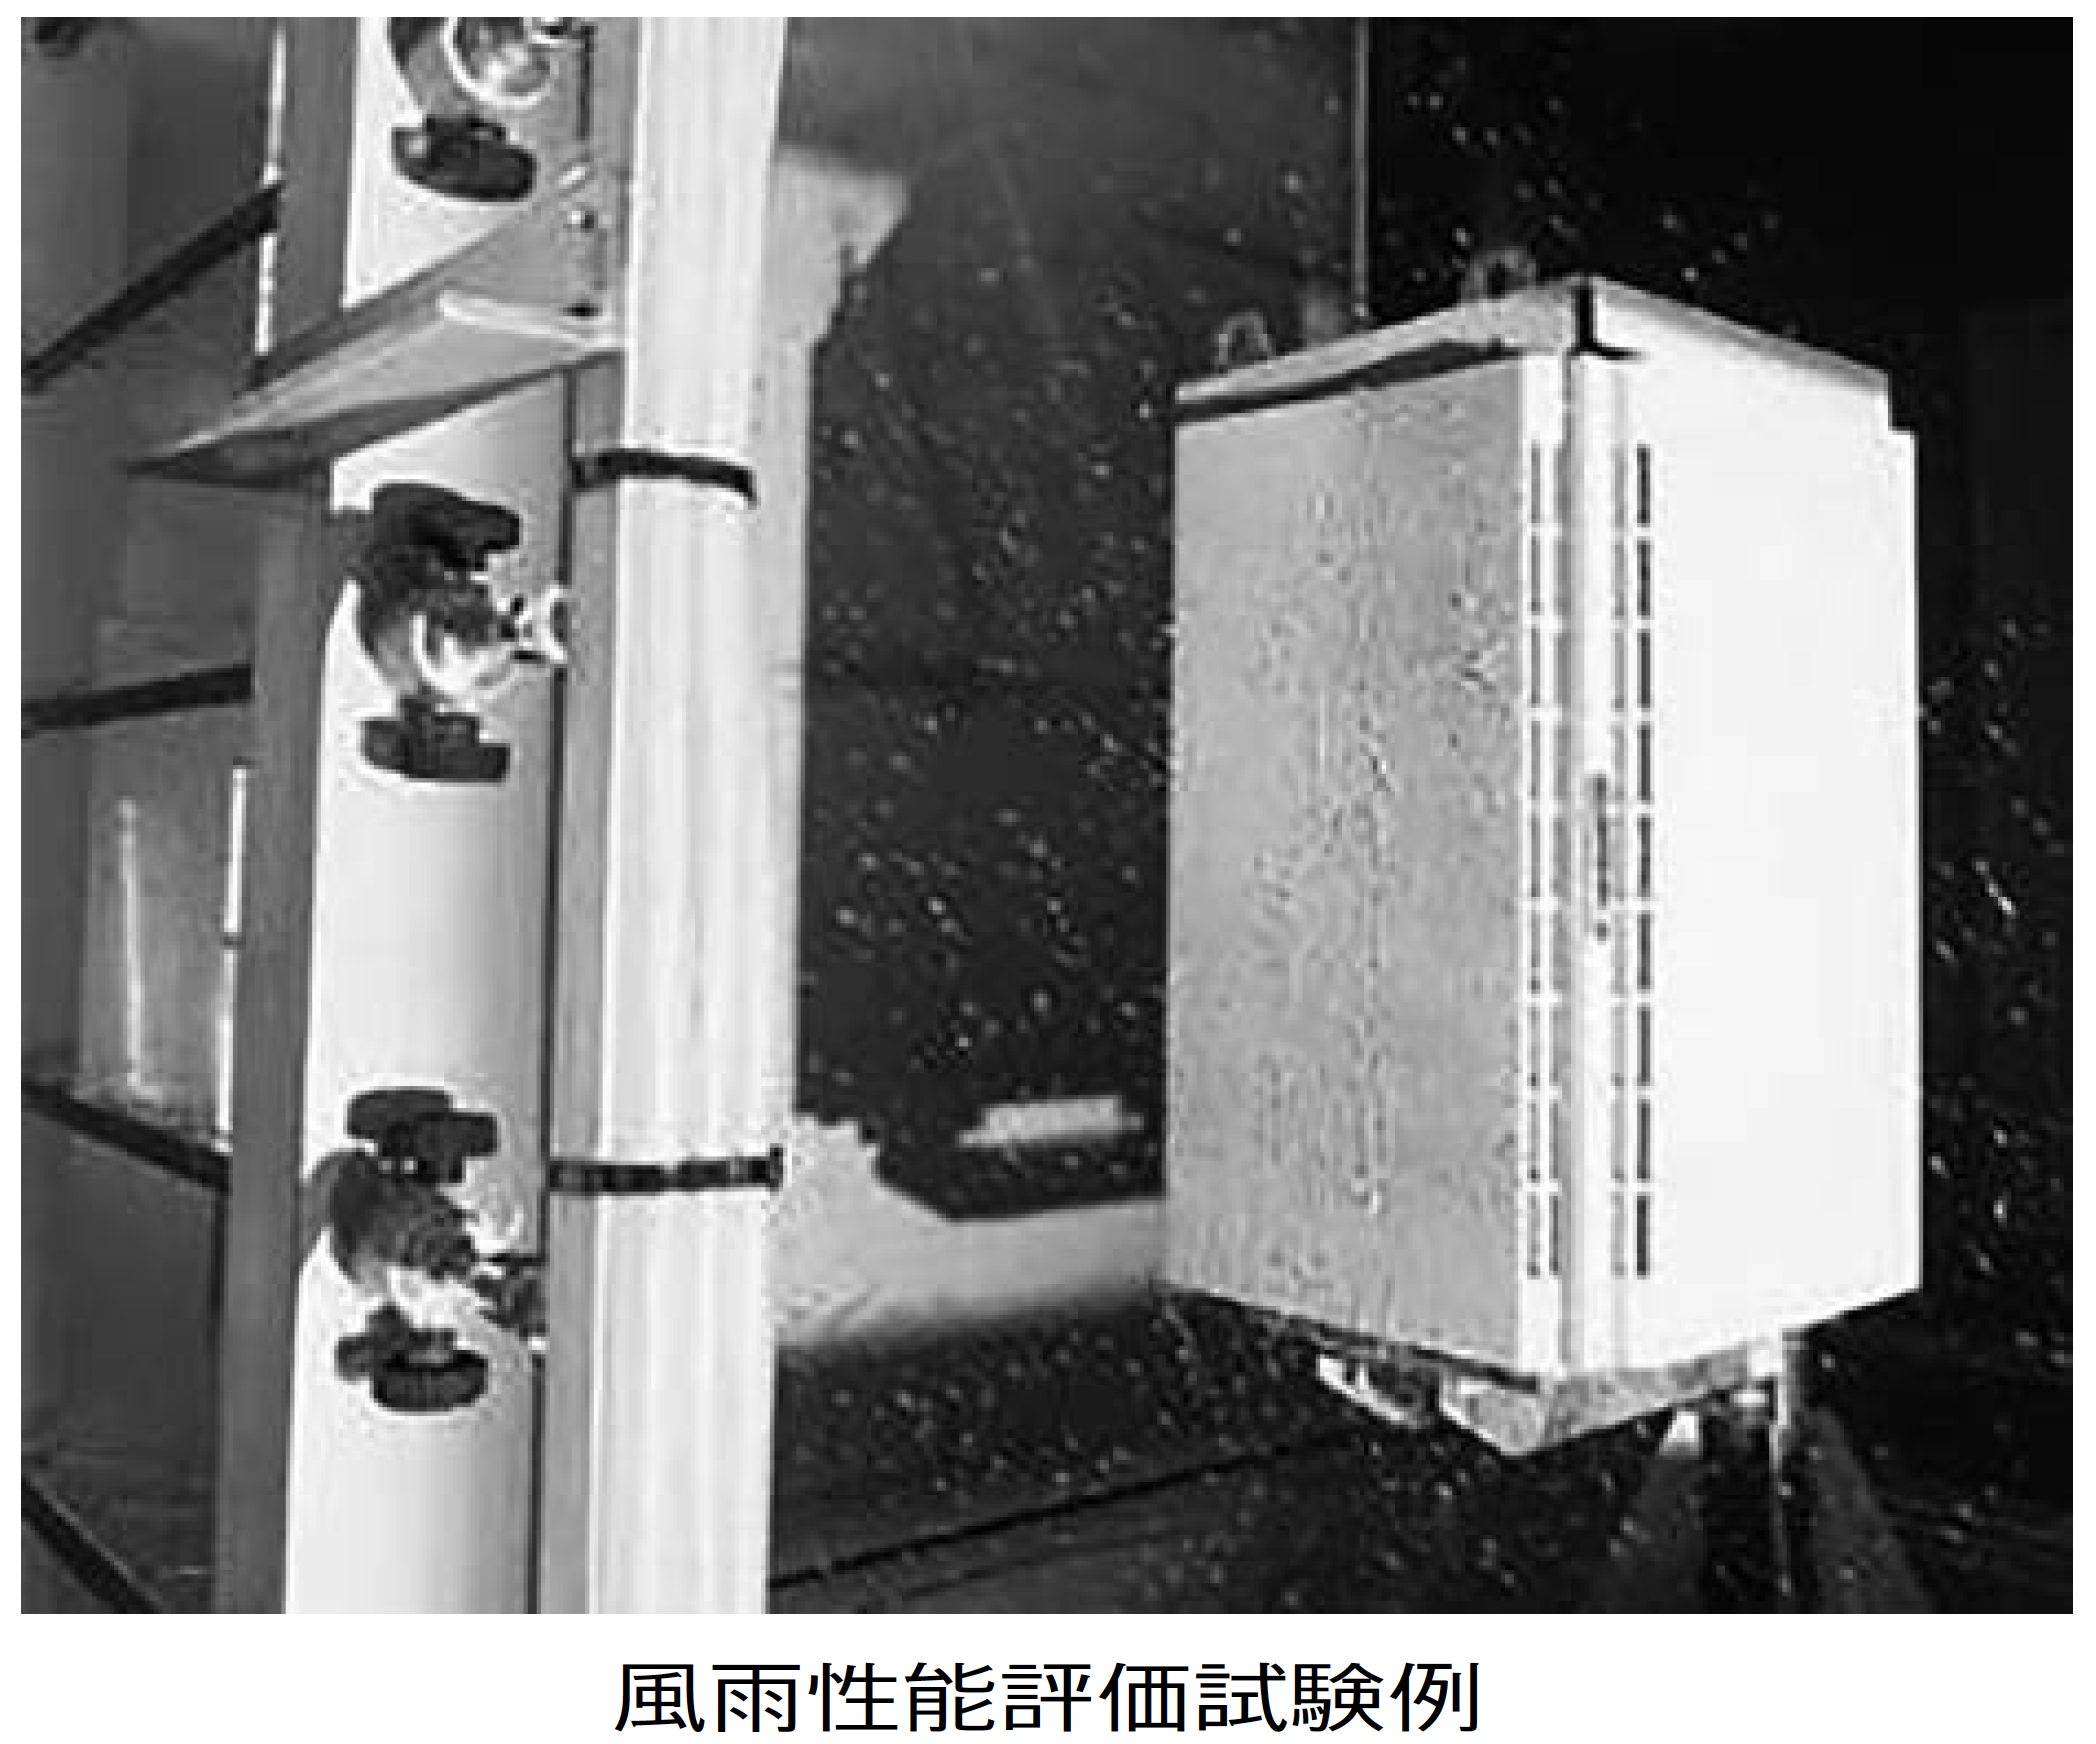 【日東工業】新たに風雨性能 評価基準を制定 屋外キャビネットの画像